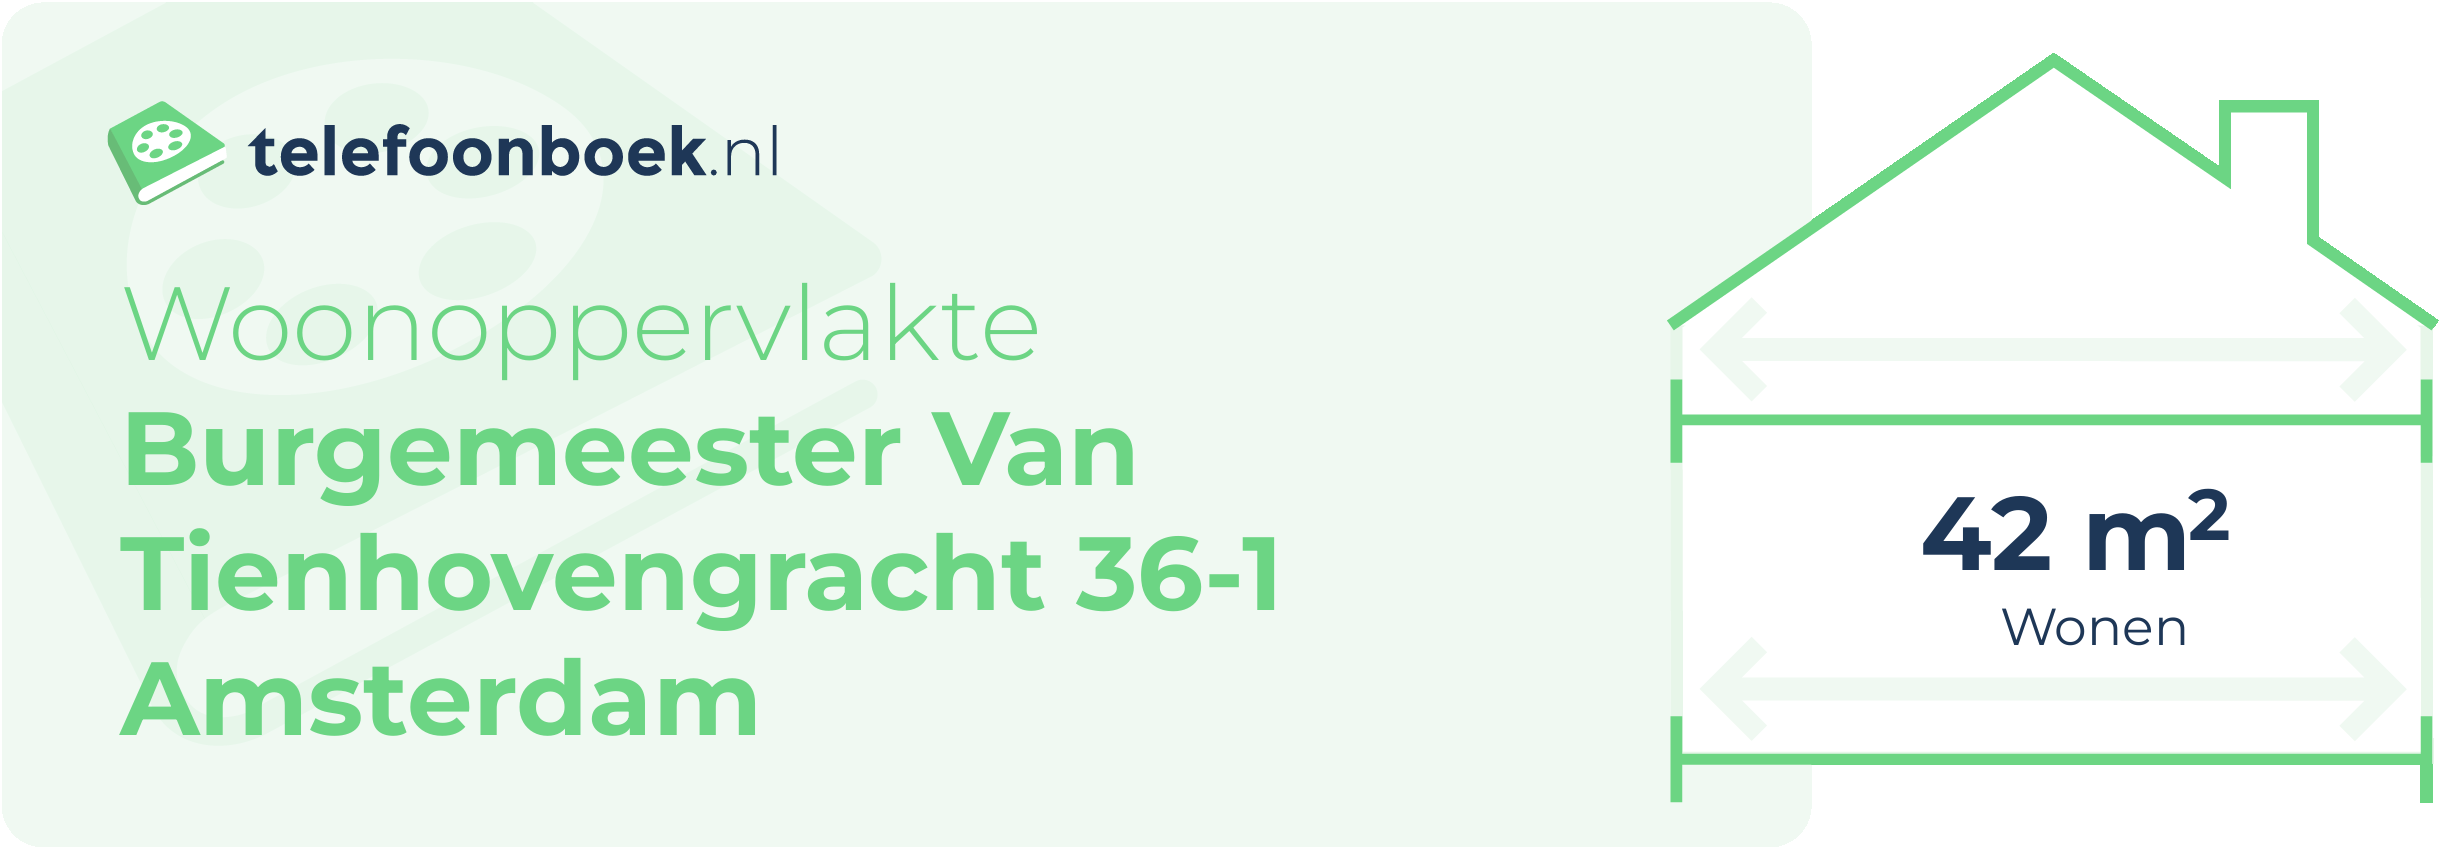 Woonoppervlakte Burgemeester Van Tienhovengracht 36-1 Amsterdam